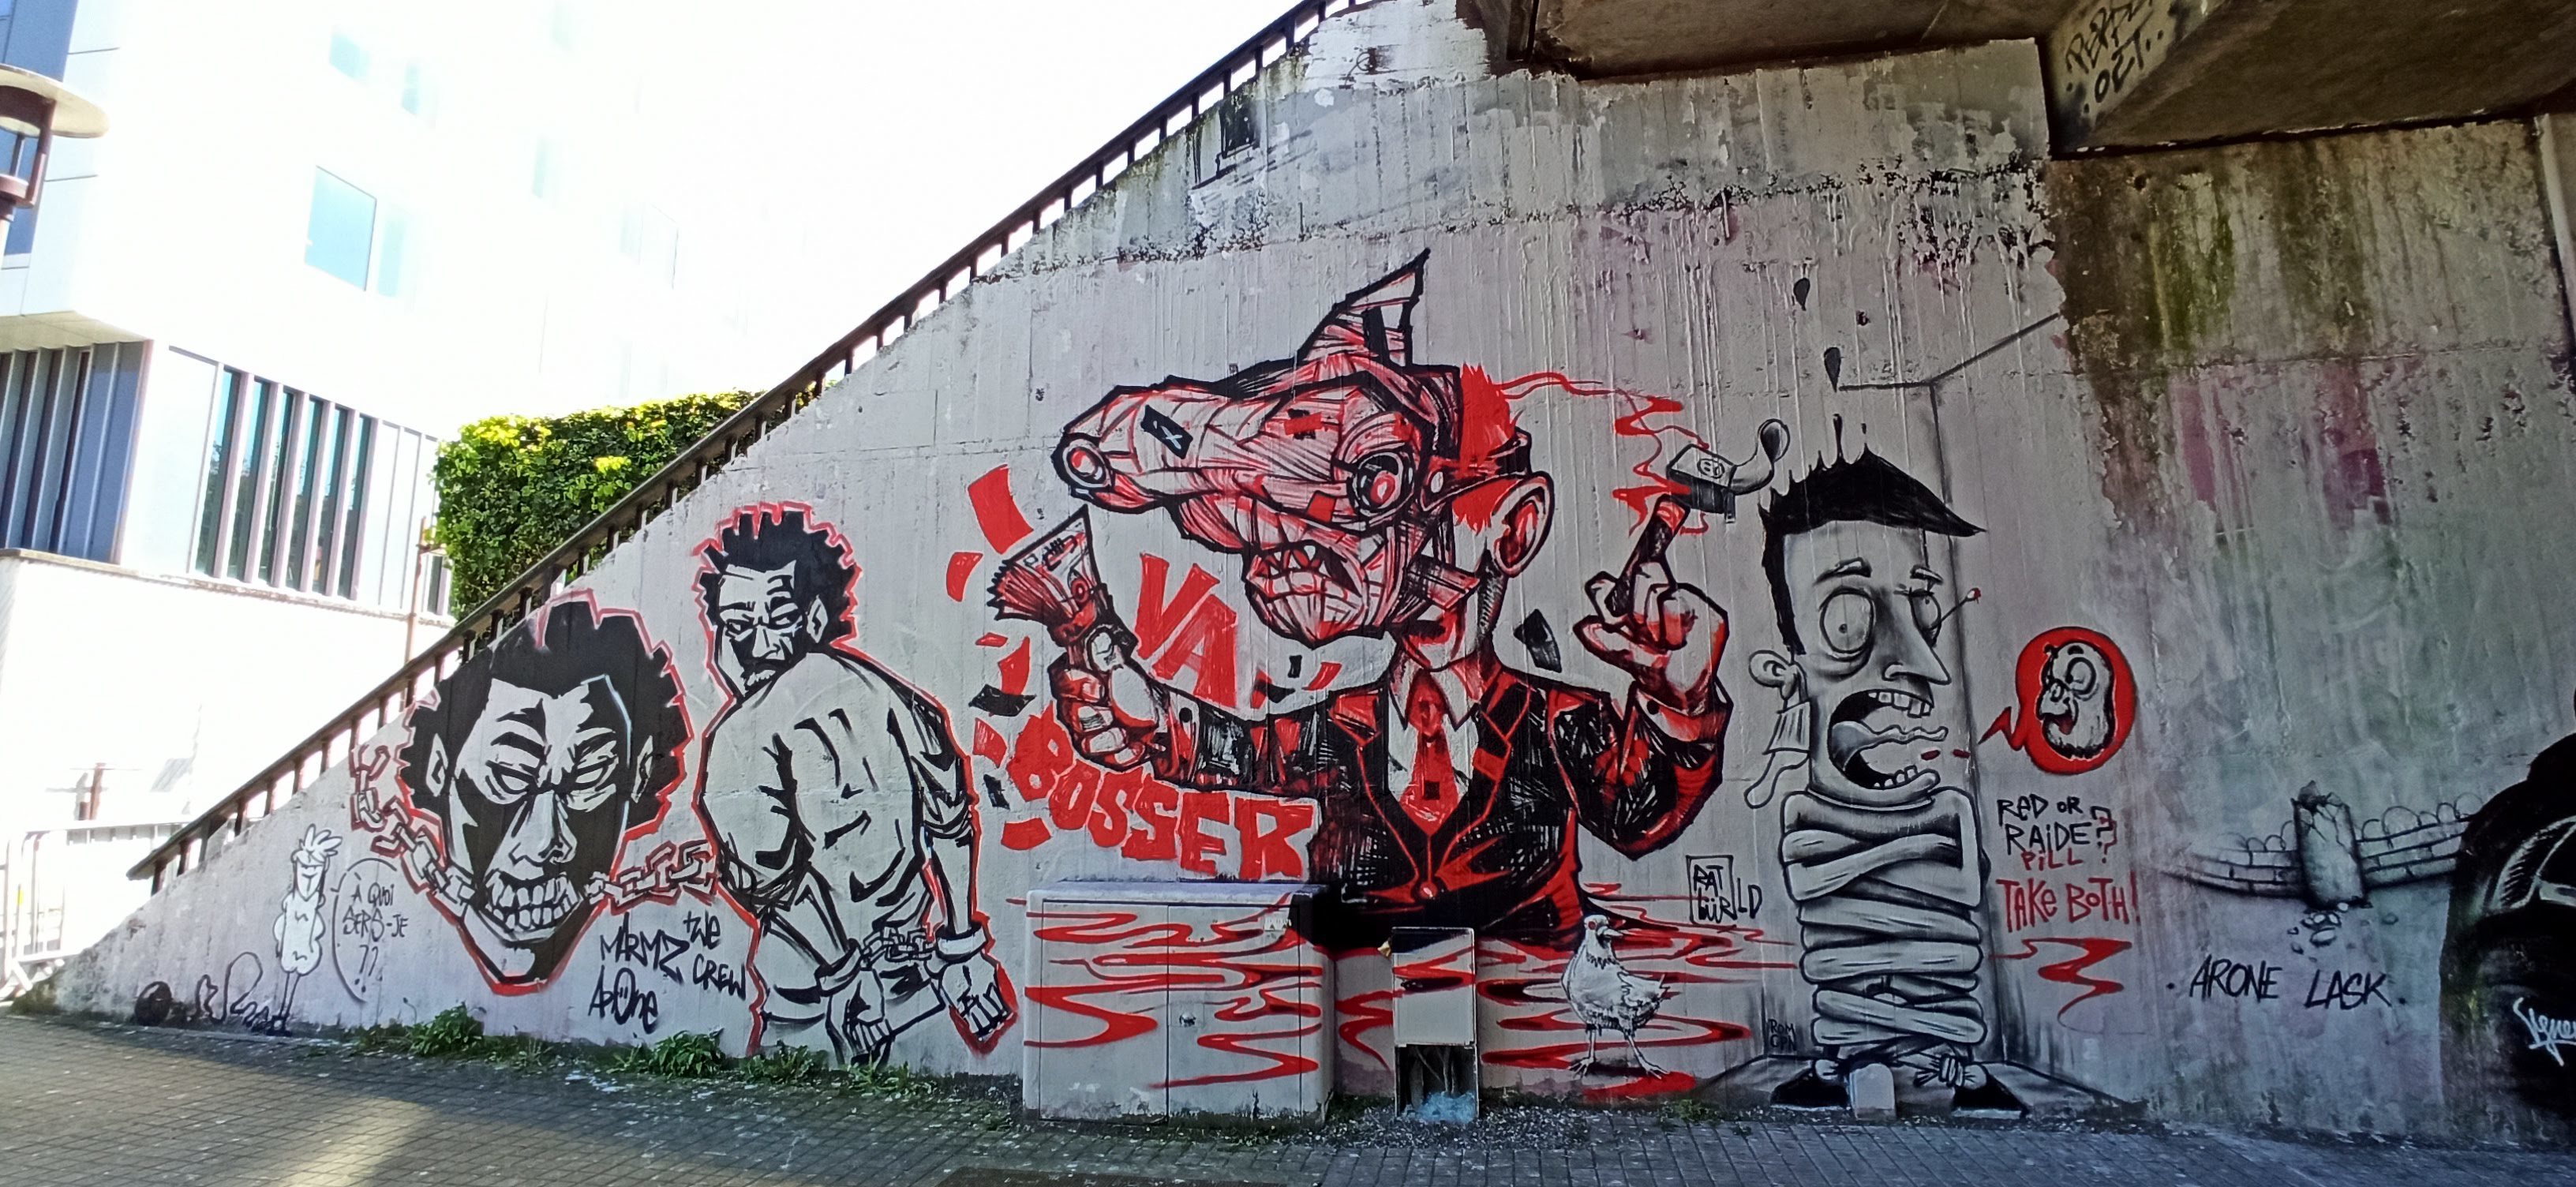 Graffiti 5041 Va bosser captured by Rabot in Nantes France